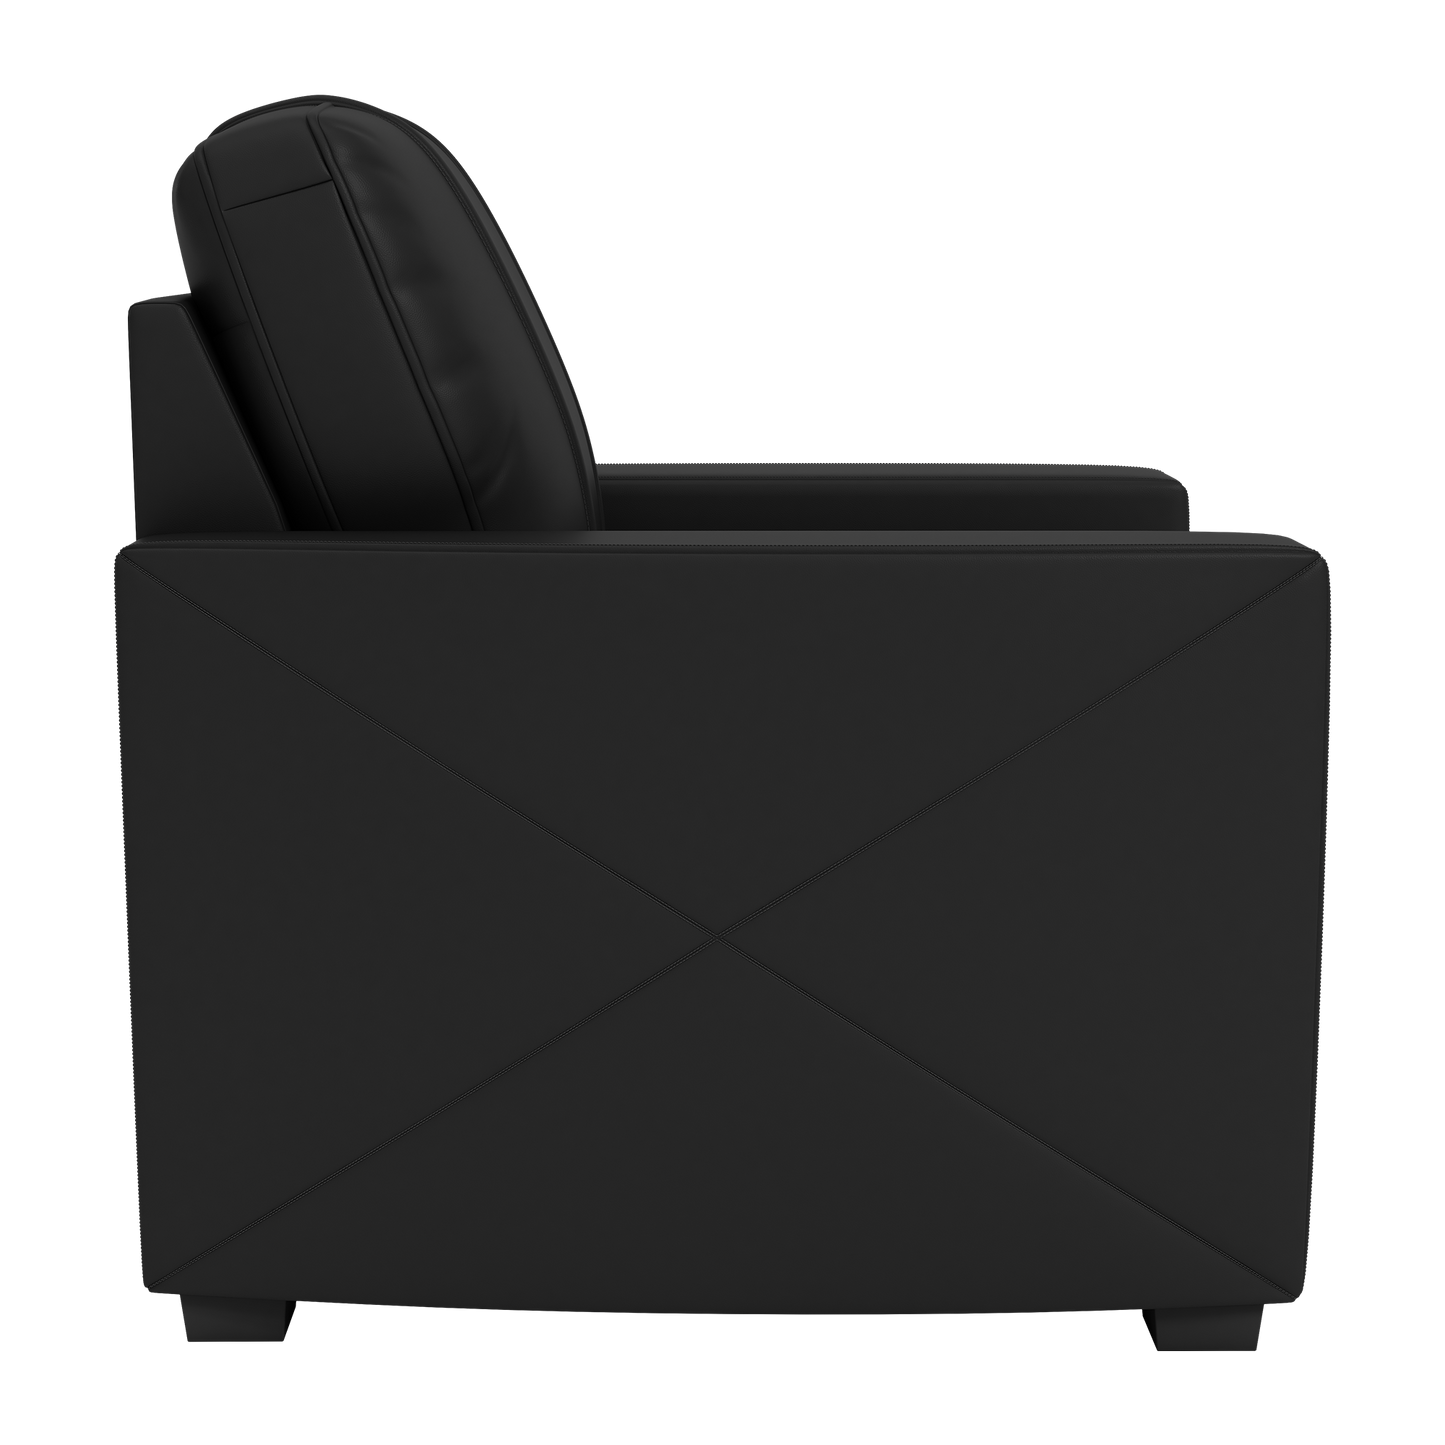 Silver Club Chair with LA Galaxy Wordmark Logo